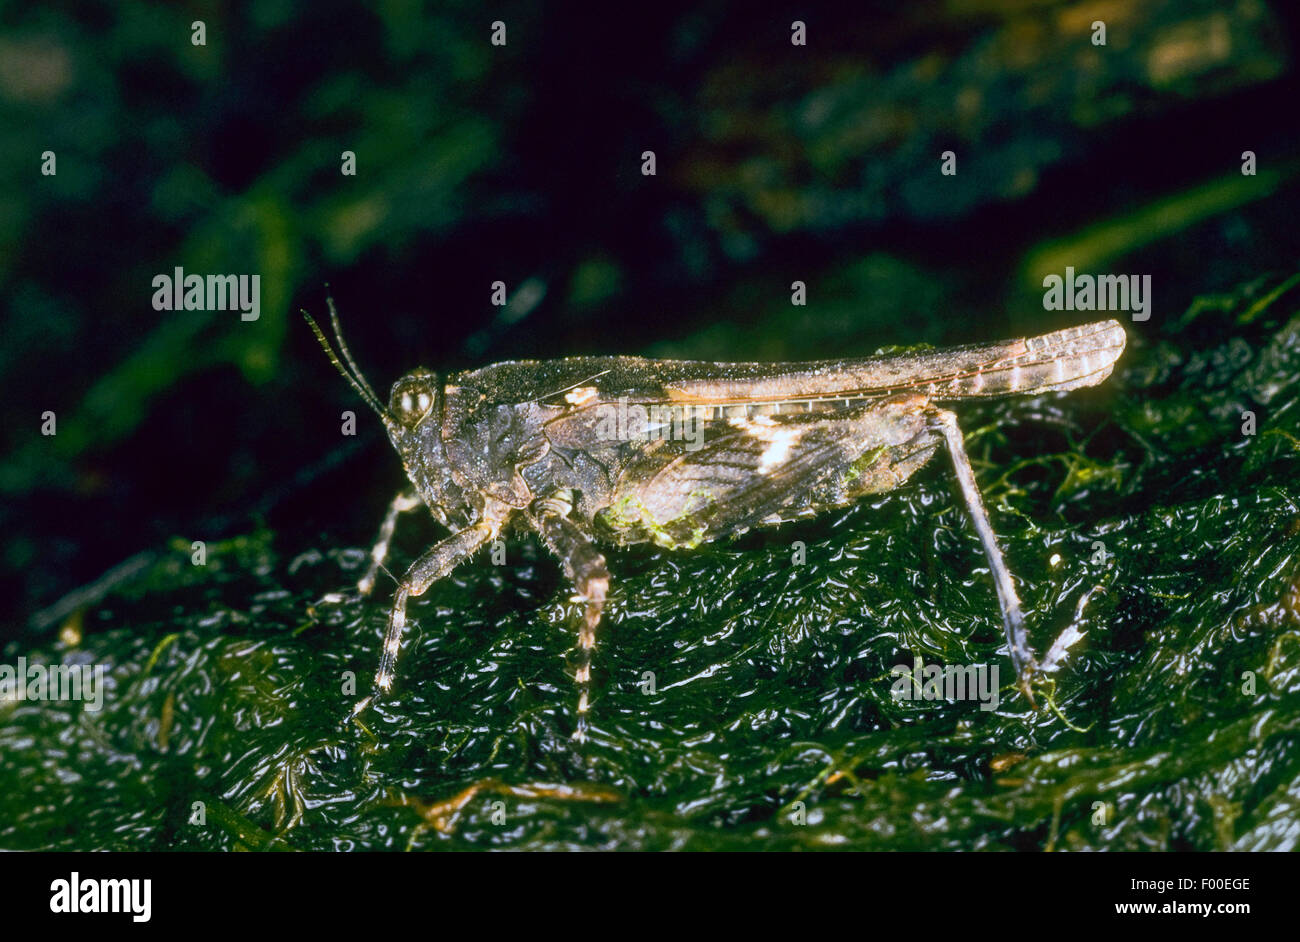 Slender groundhopper (Tetrix subulata, Tetrix subulatum, Acrydium subulatum), on wet moss, Germany Stock Photo